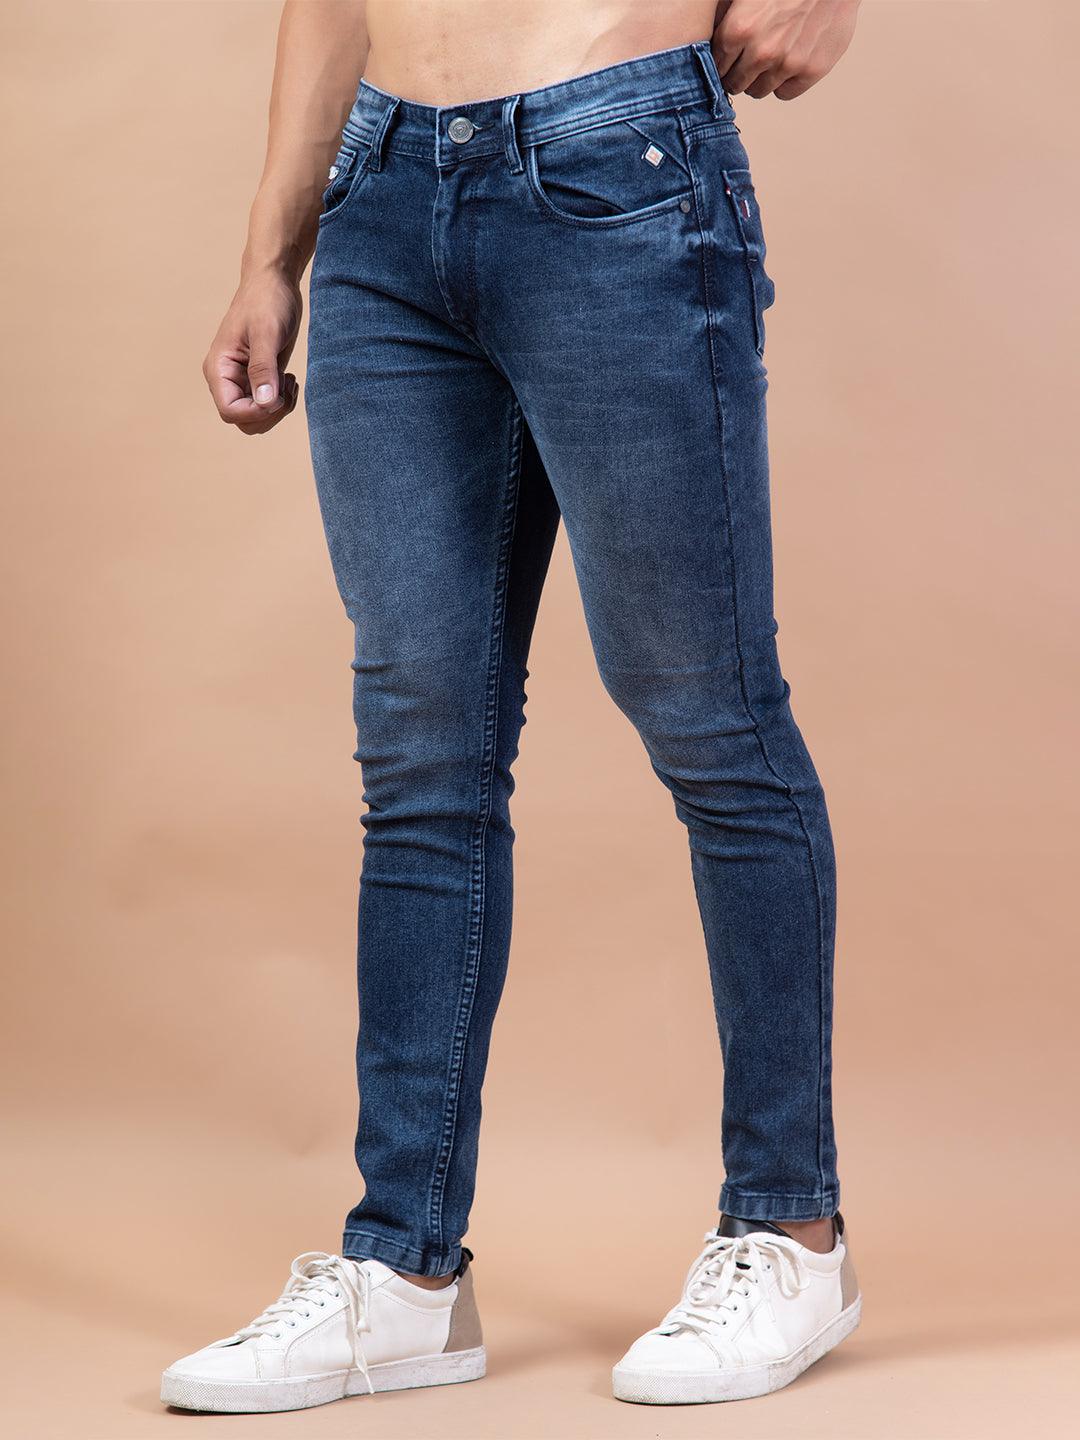 Plus size Jeans Men Hip hop StreetWear Joggers Ankle Length Denim Cargo  Pants Loose Pocket Harem Trousers Sweatpants JKP3778 | Denim cargo pants,  Hip hop streetwear, Harem jeans